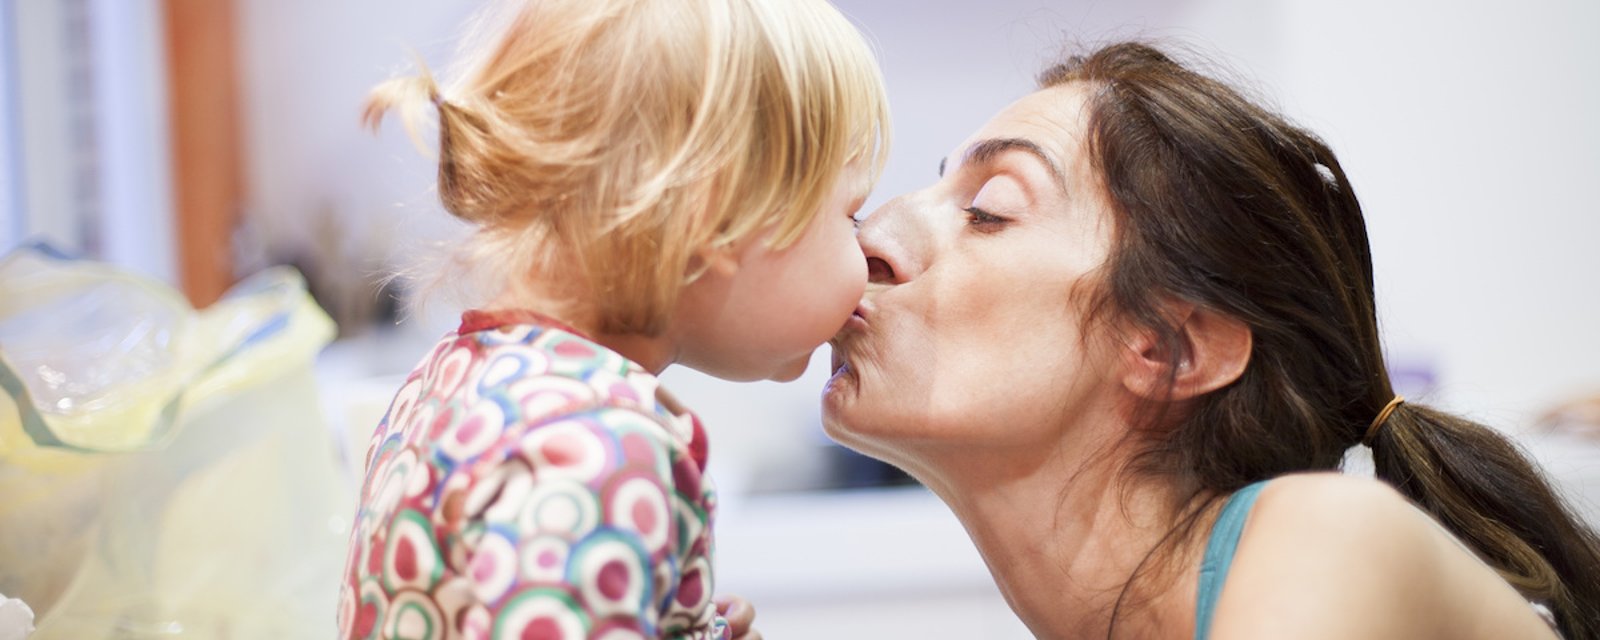 Une psy explique pourquoi il vaut mieux ne pas embrasser nos enfants sur la bouche